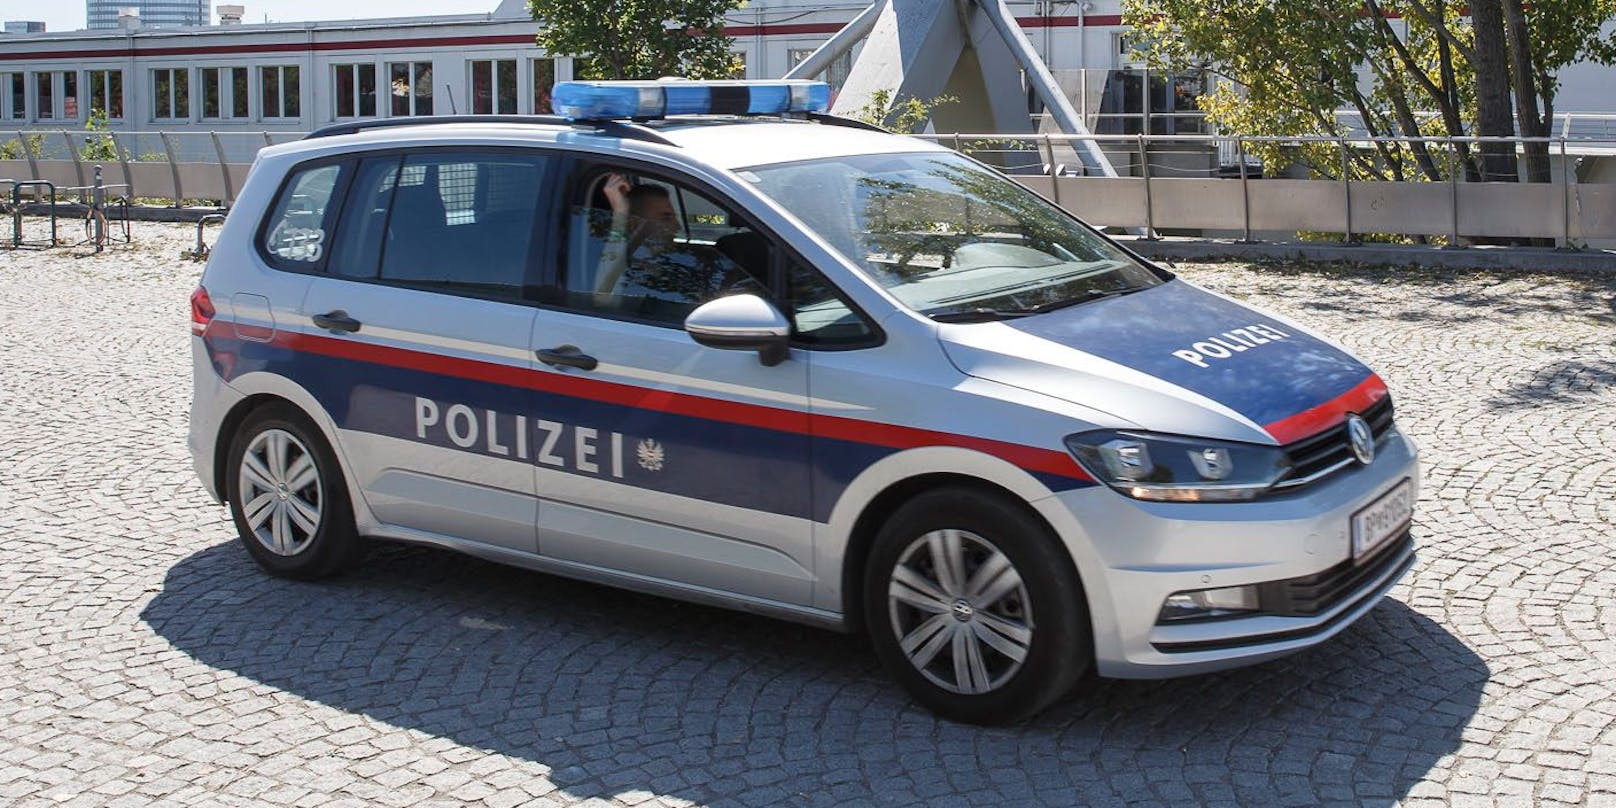 Die Polizei hat in Wien-Ottakring einen 15-jährigen Tatverdächtigen nach einer Trafikraubserie festgenommen (Symbolbild).